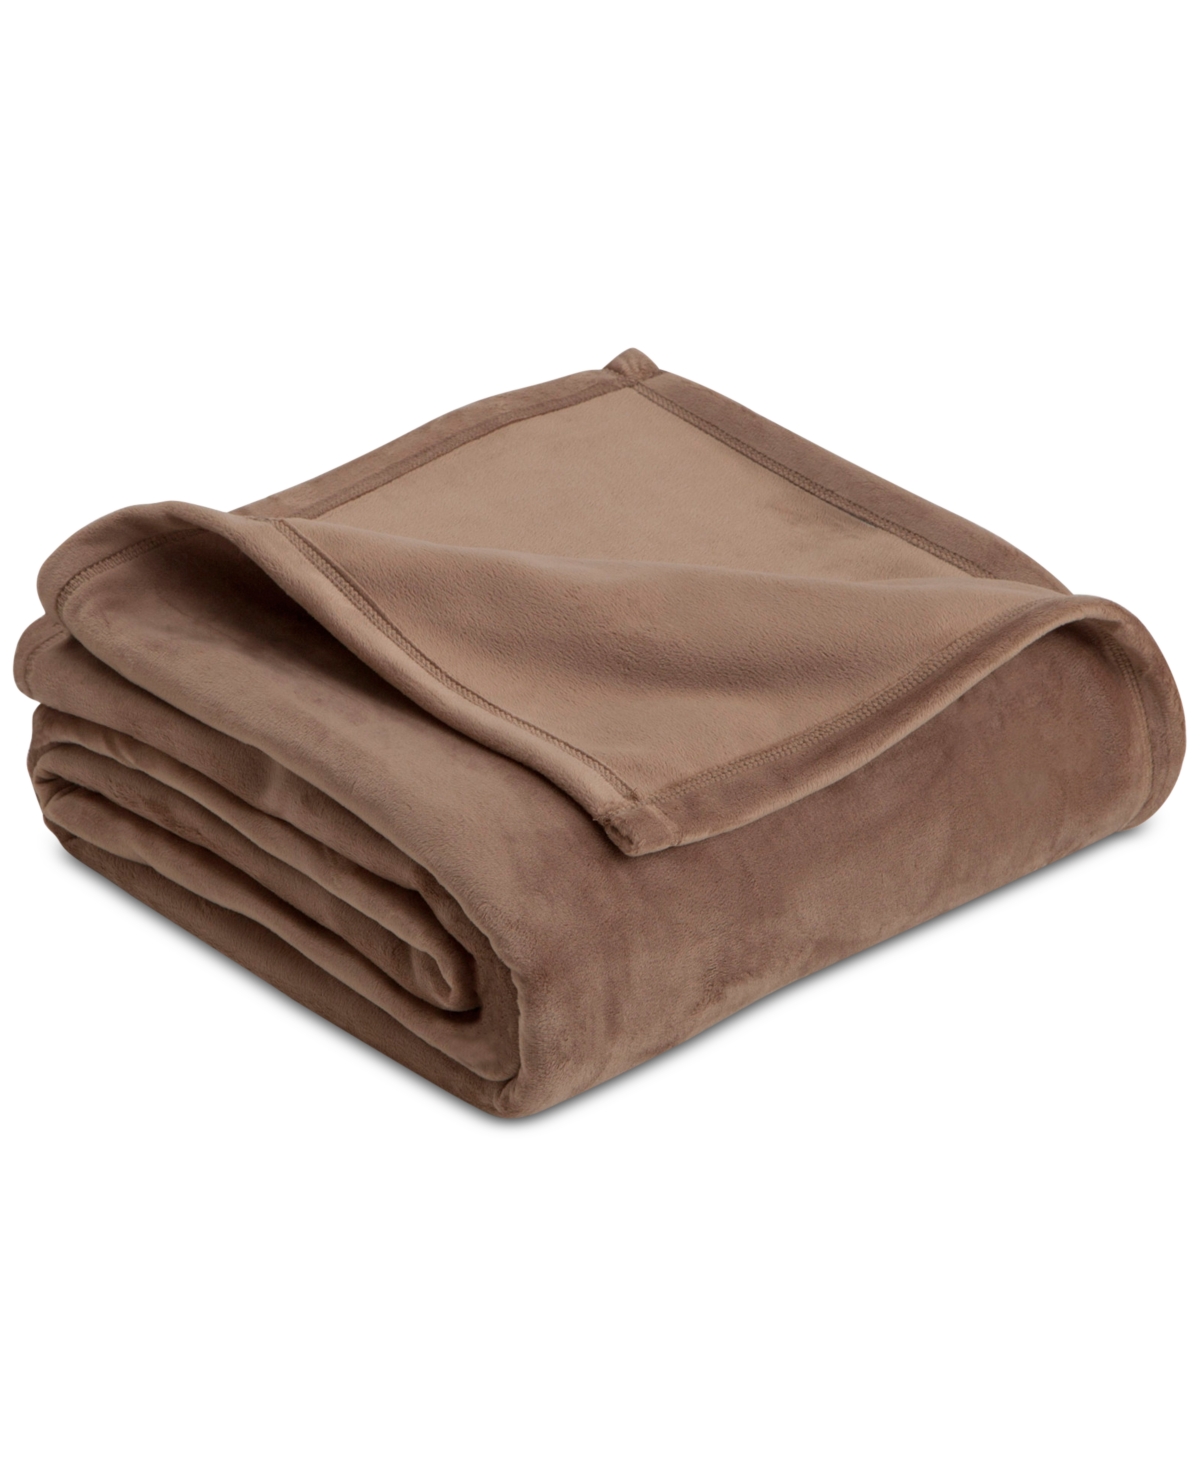 Vellux Plush Knit Full/queen Blanket Bedding In Desert Taupe